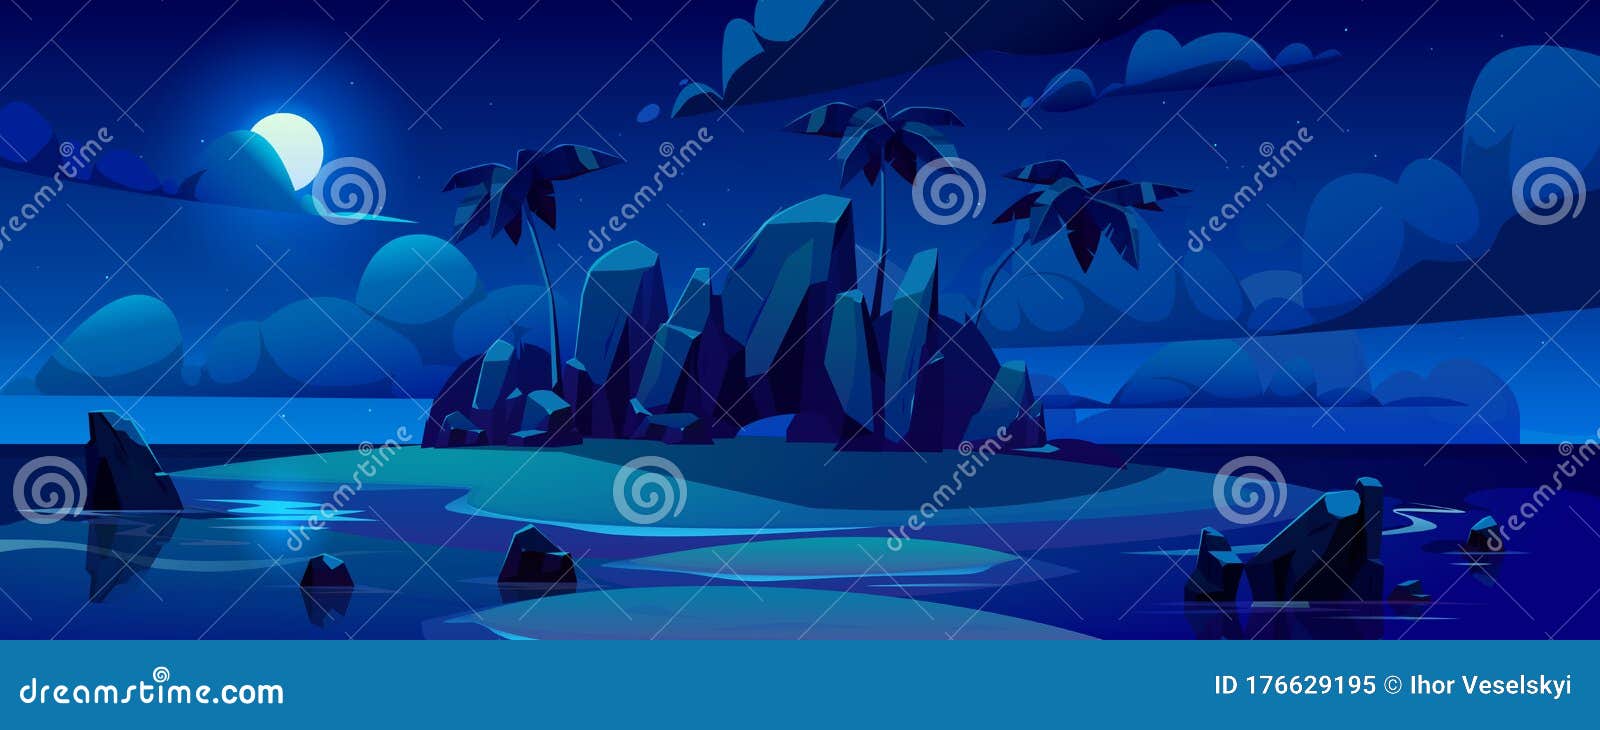 Vector Night Tropical Island in Ocean Stock Illustration - Illustration ...